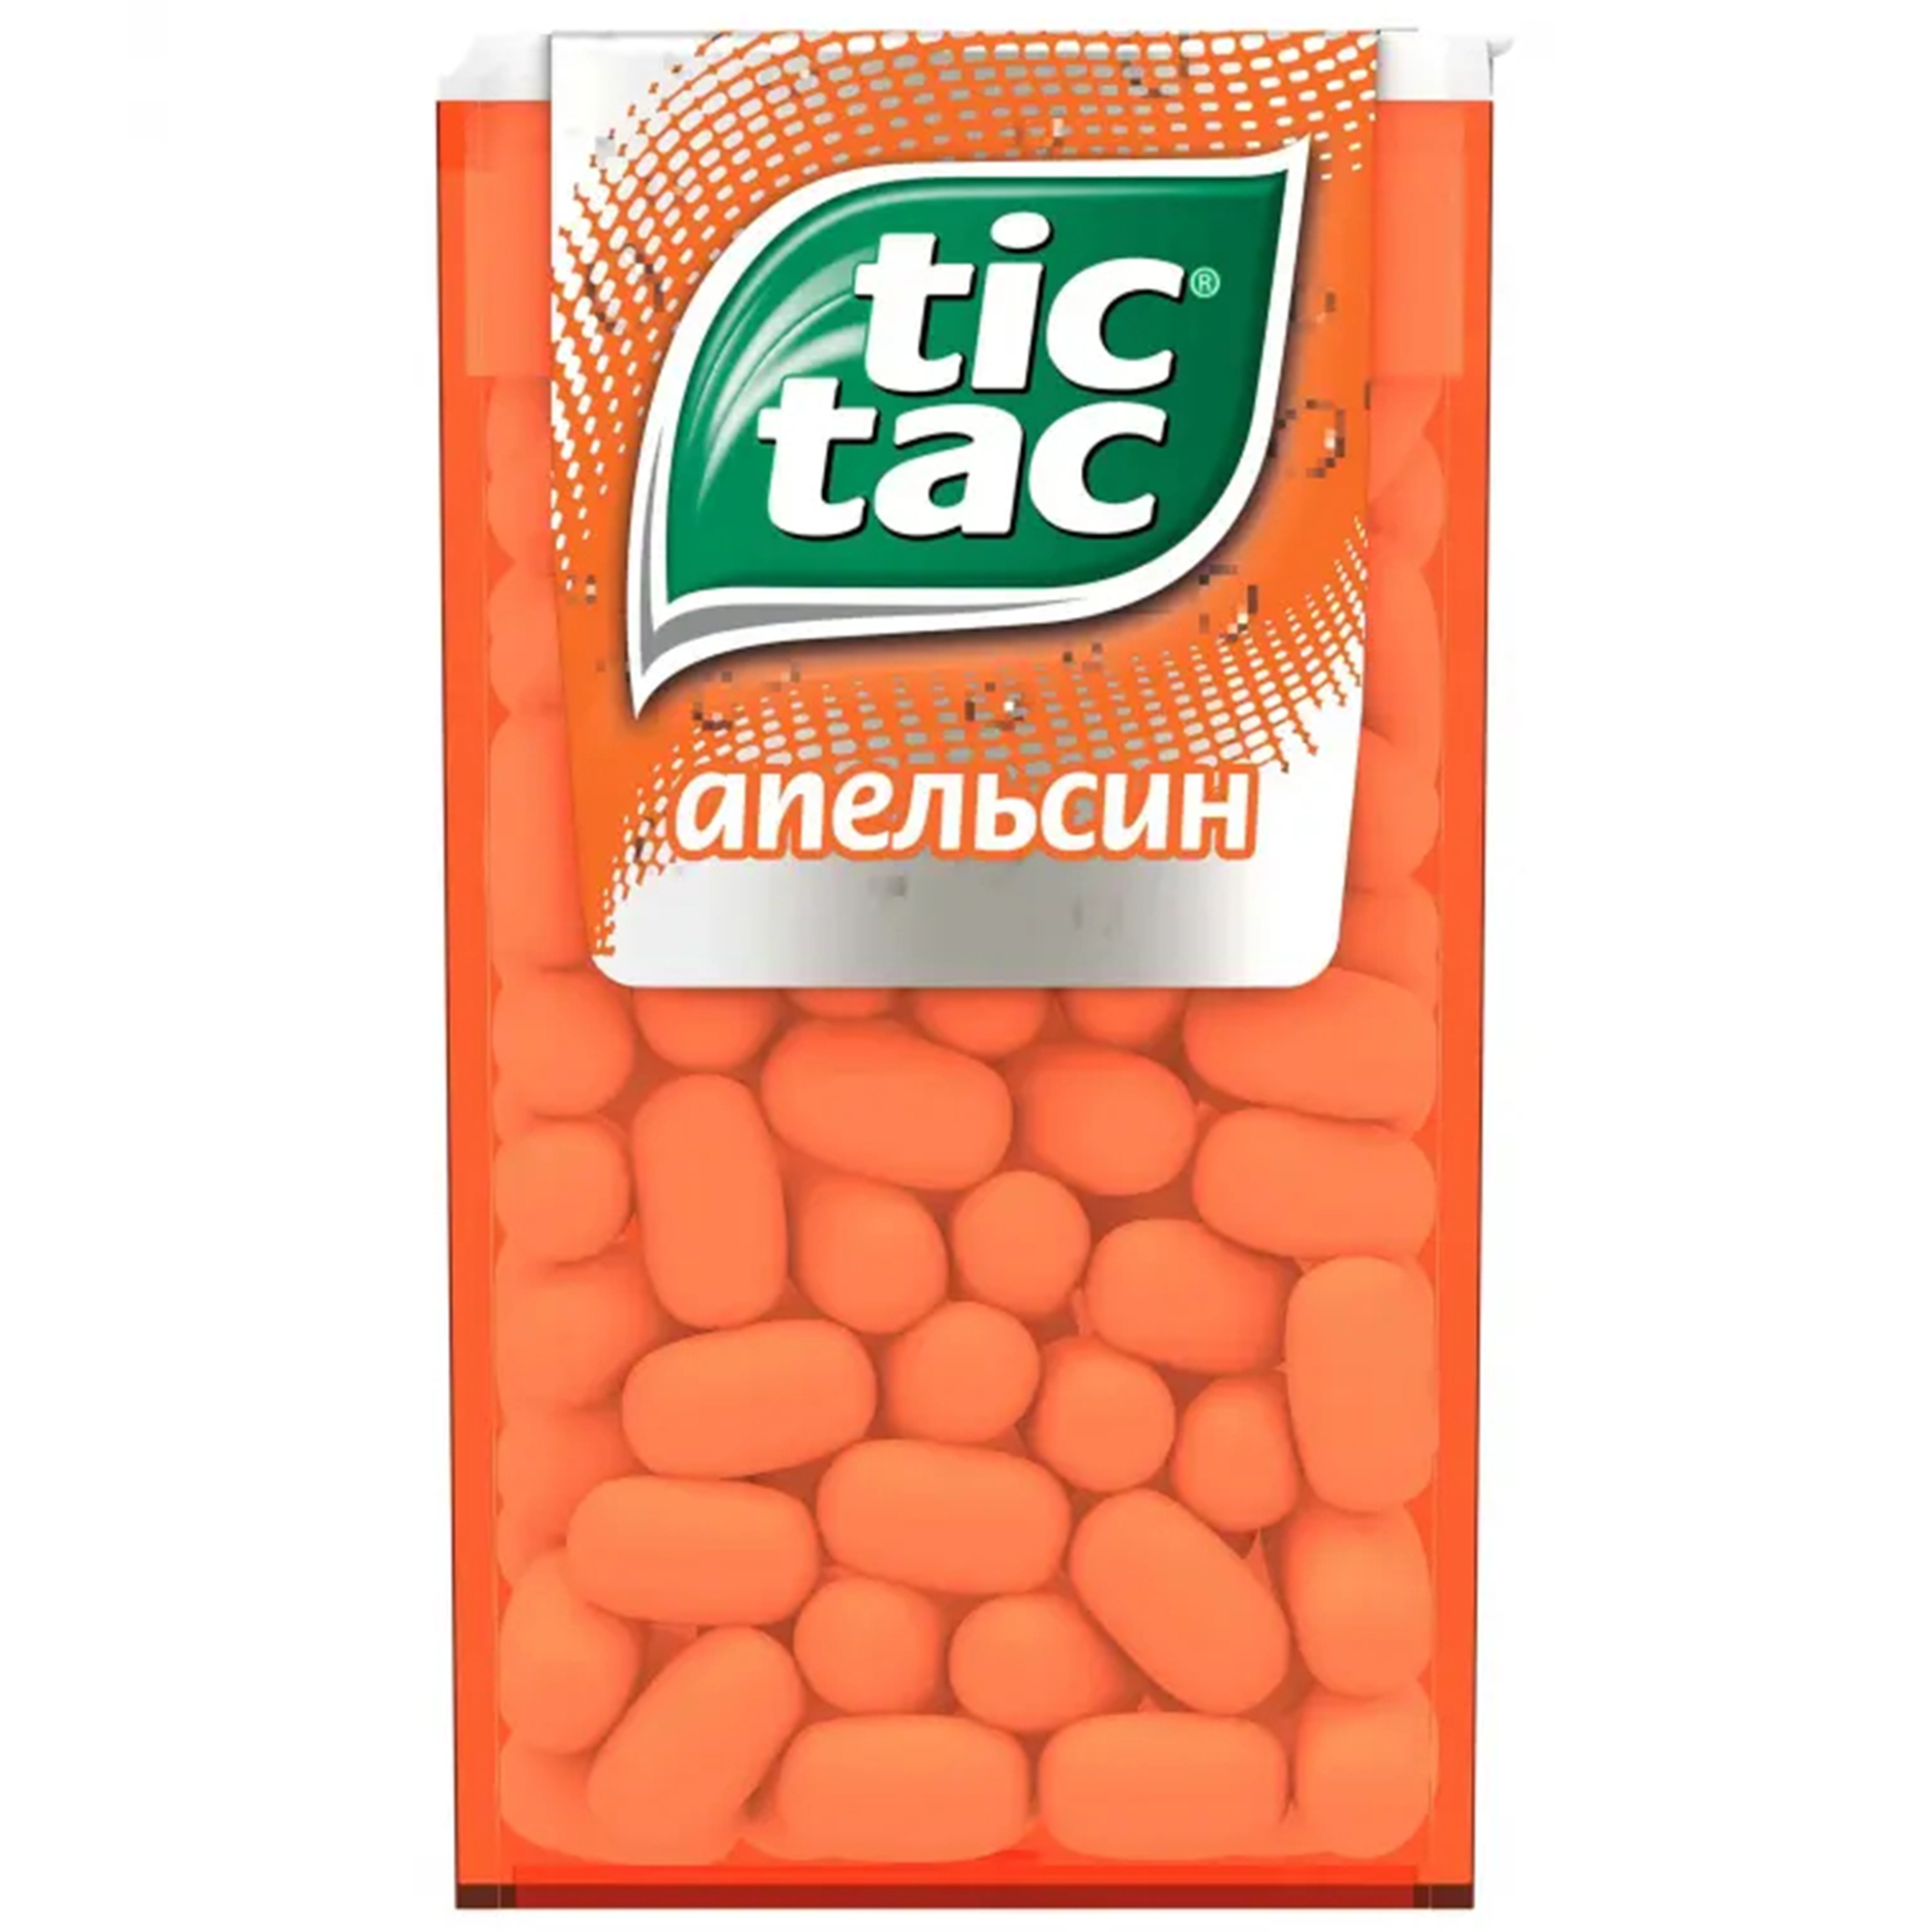 Драже Tic Tac со вкусом апельсина, 49 г драже tic tac со вкусом мяты 49 г